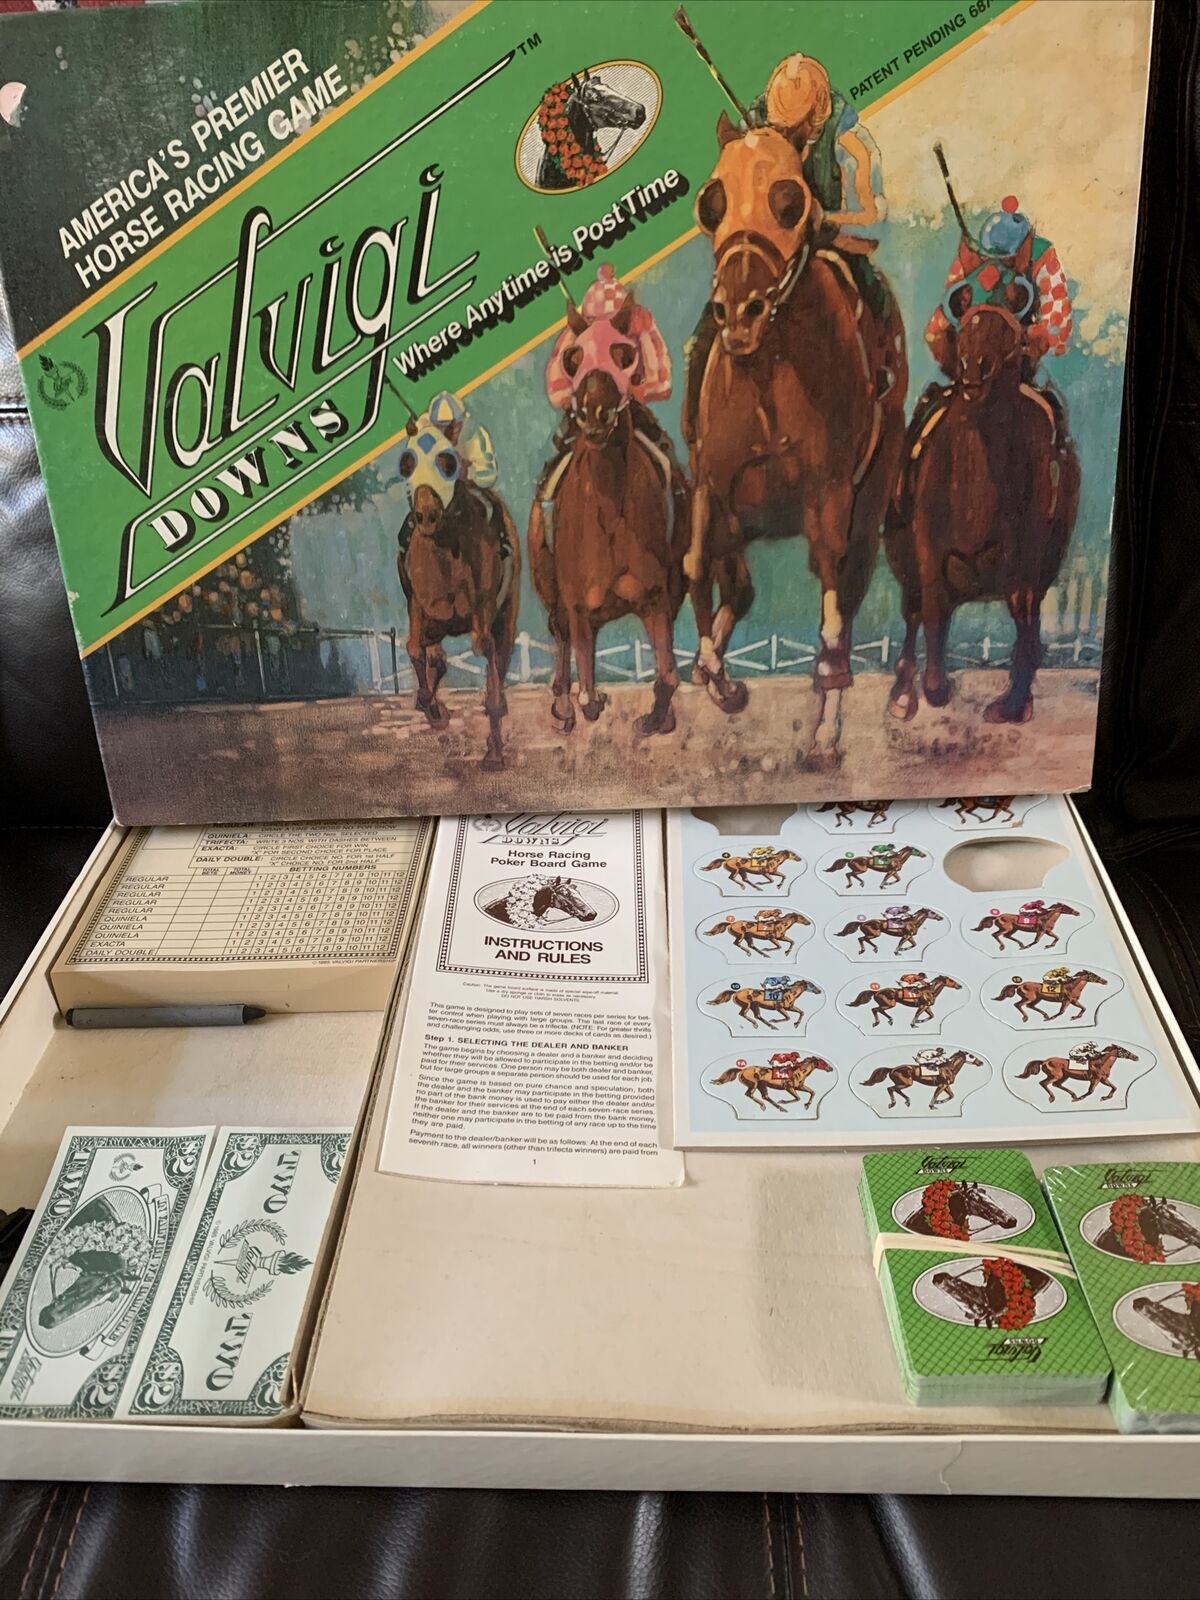 1985 Valvigi Downs America's Premier Racing VGU Board San Jose Mall Game Max 81% OFF Horse